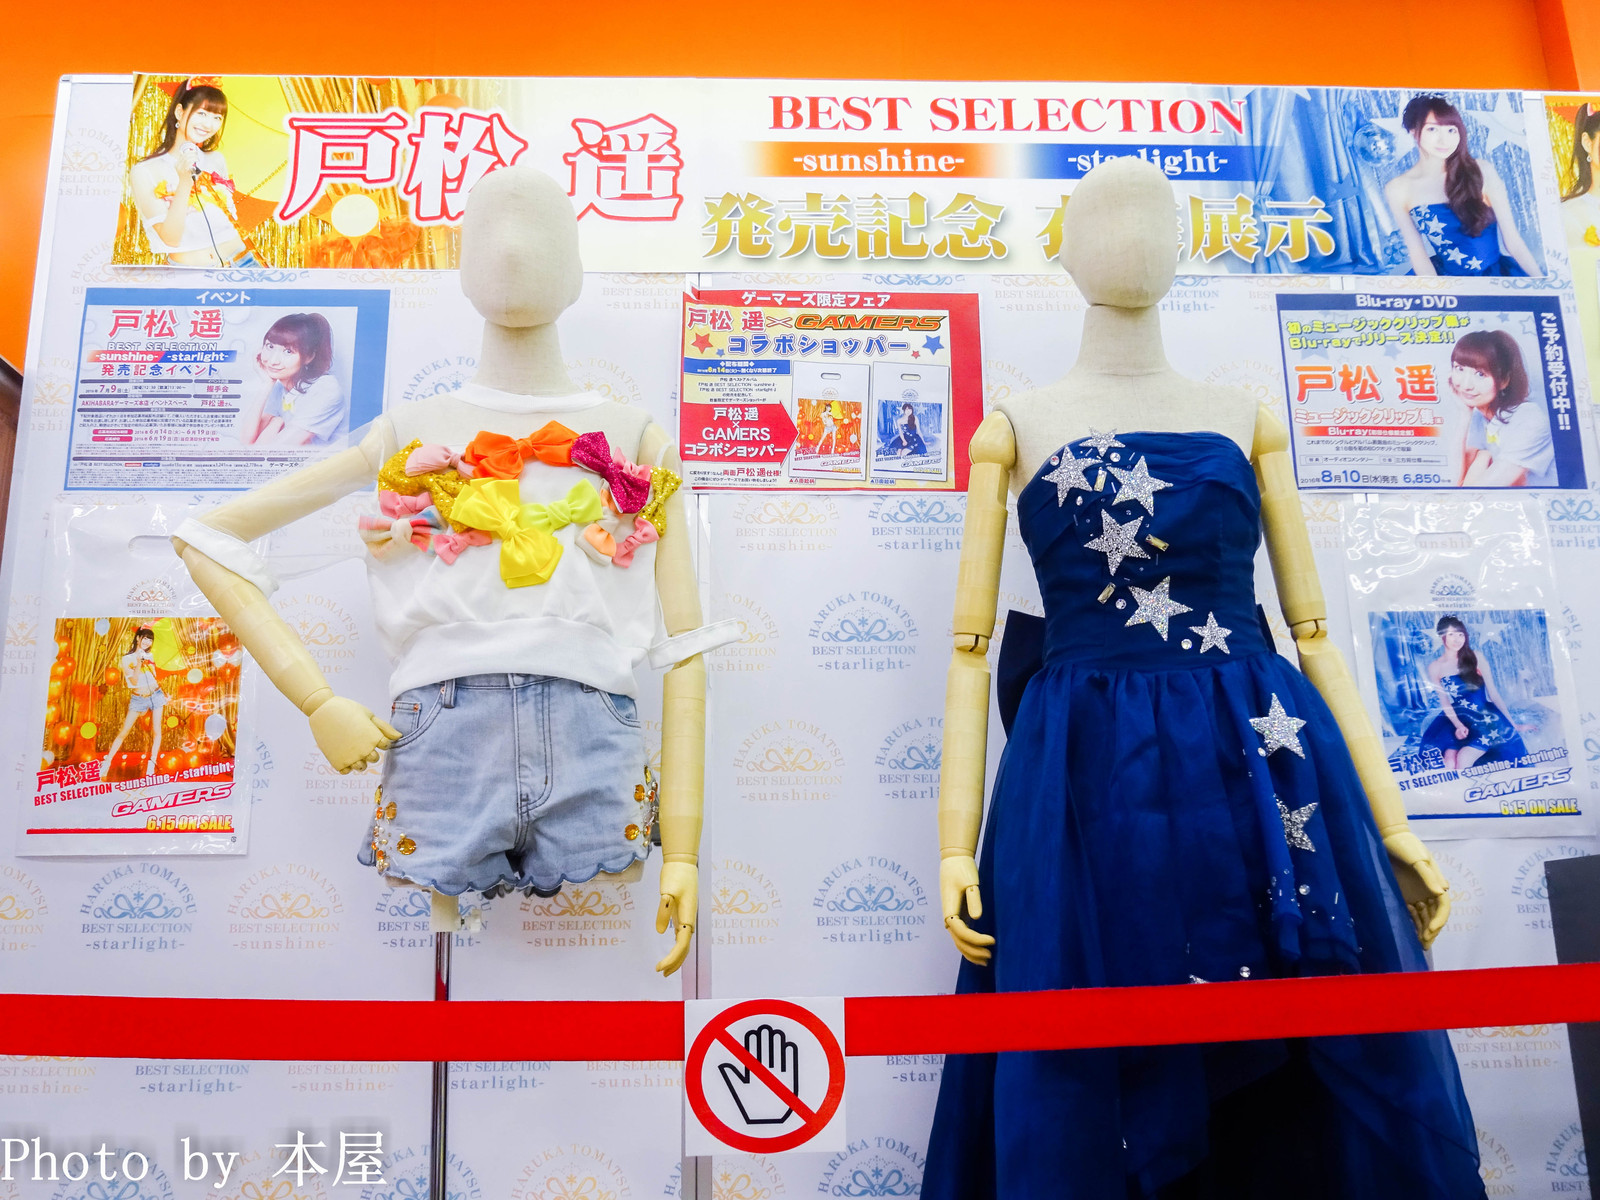 戸松遥 Best Selection Sunshine Starlight 2タイトルの発売を記念した衣装展が開催 アキバな本屋